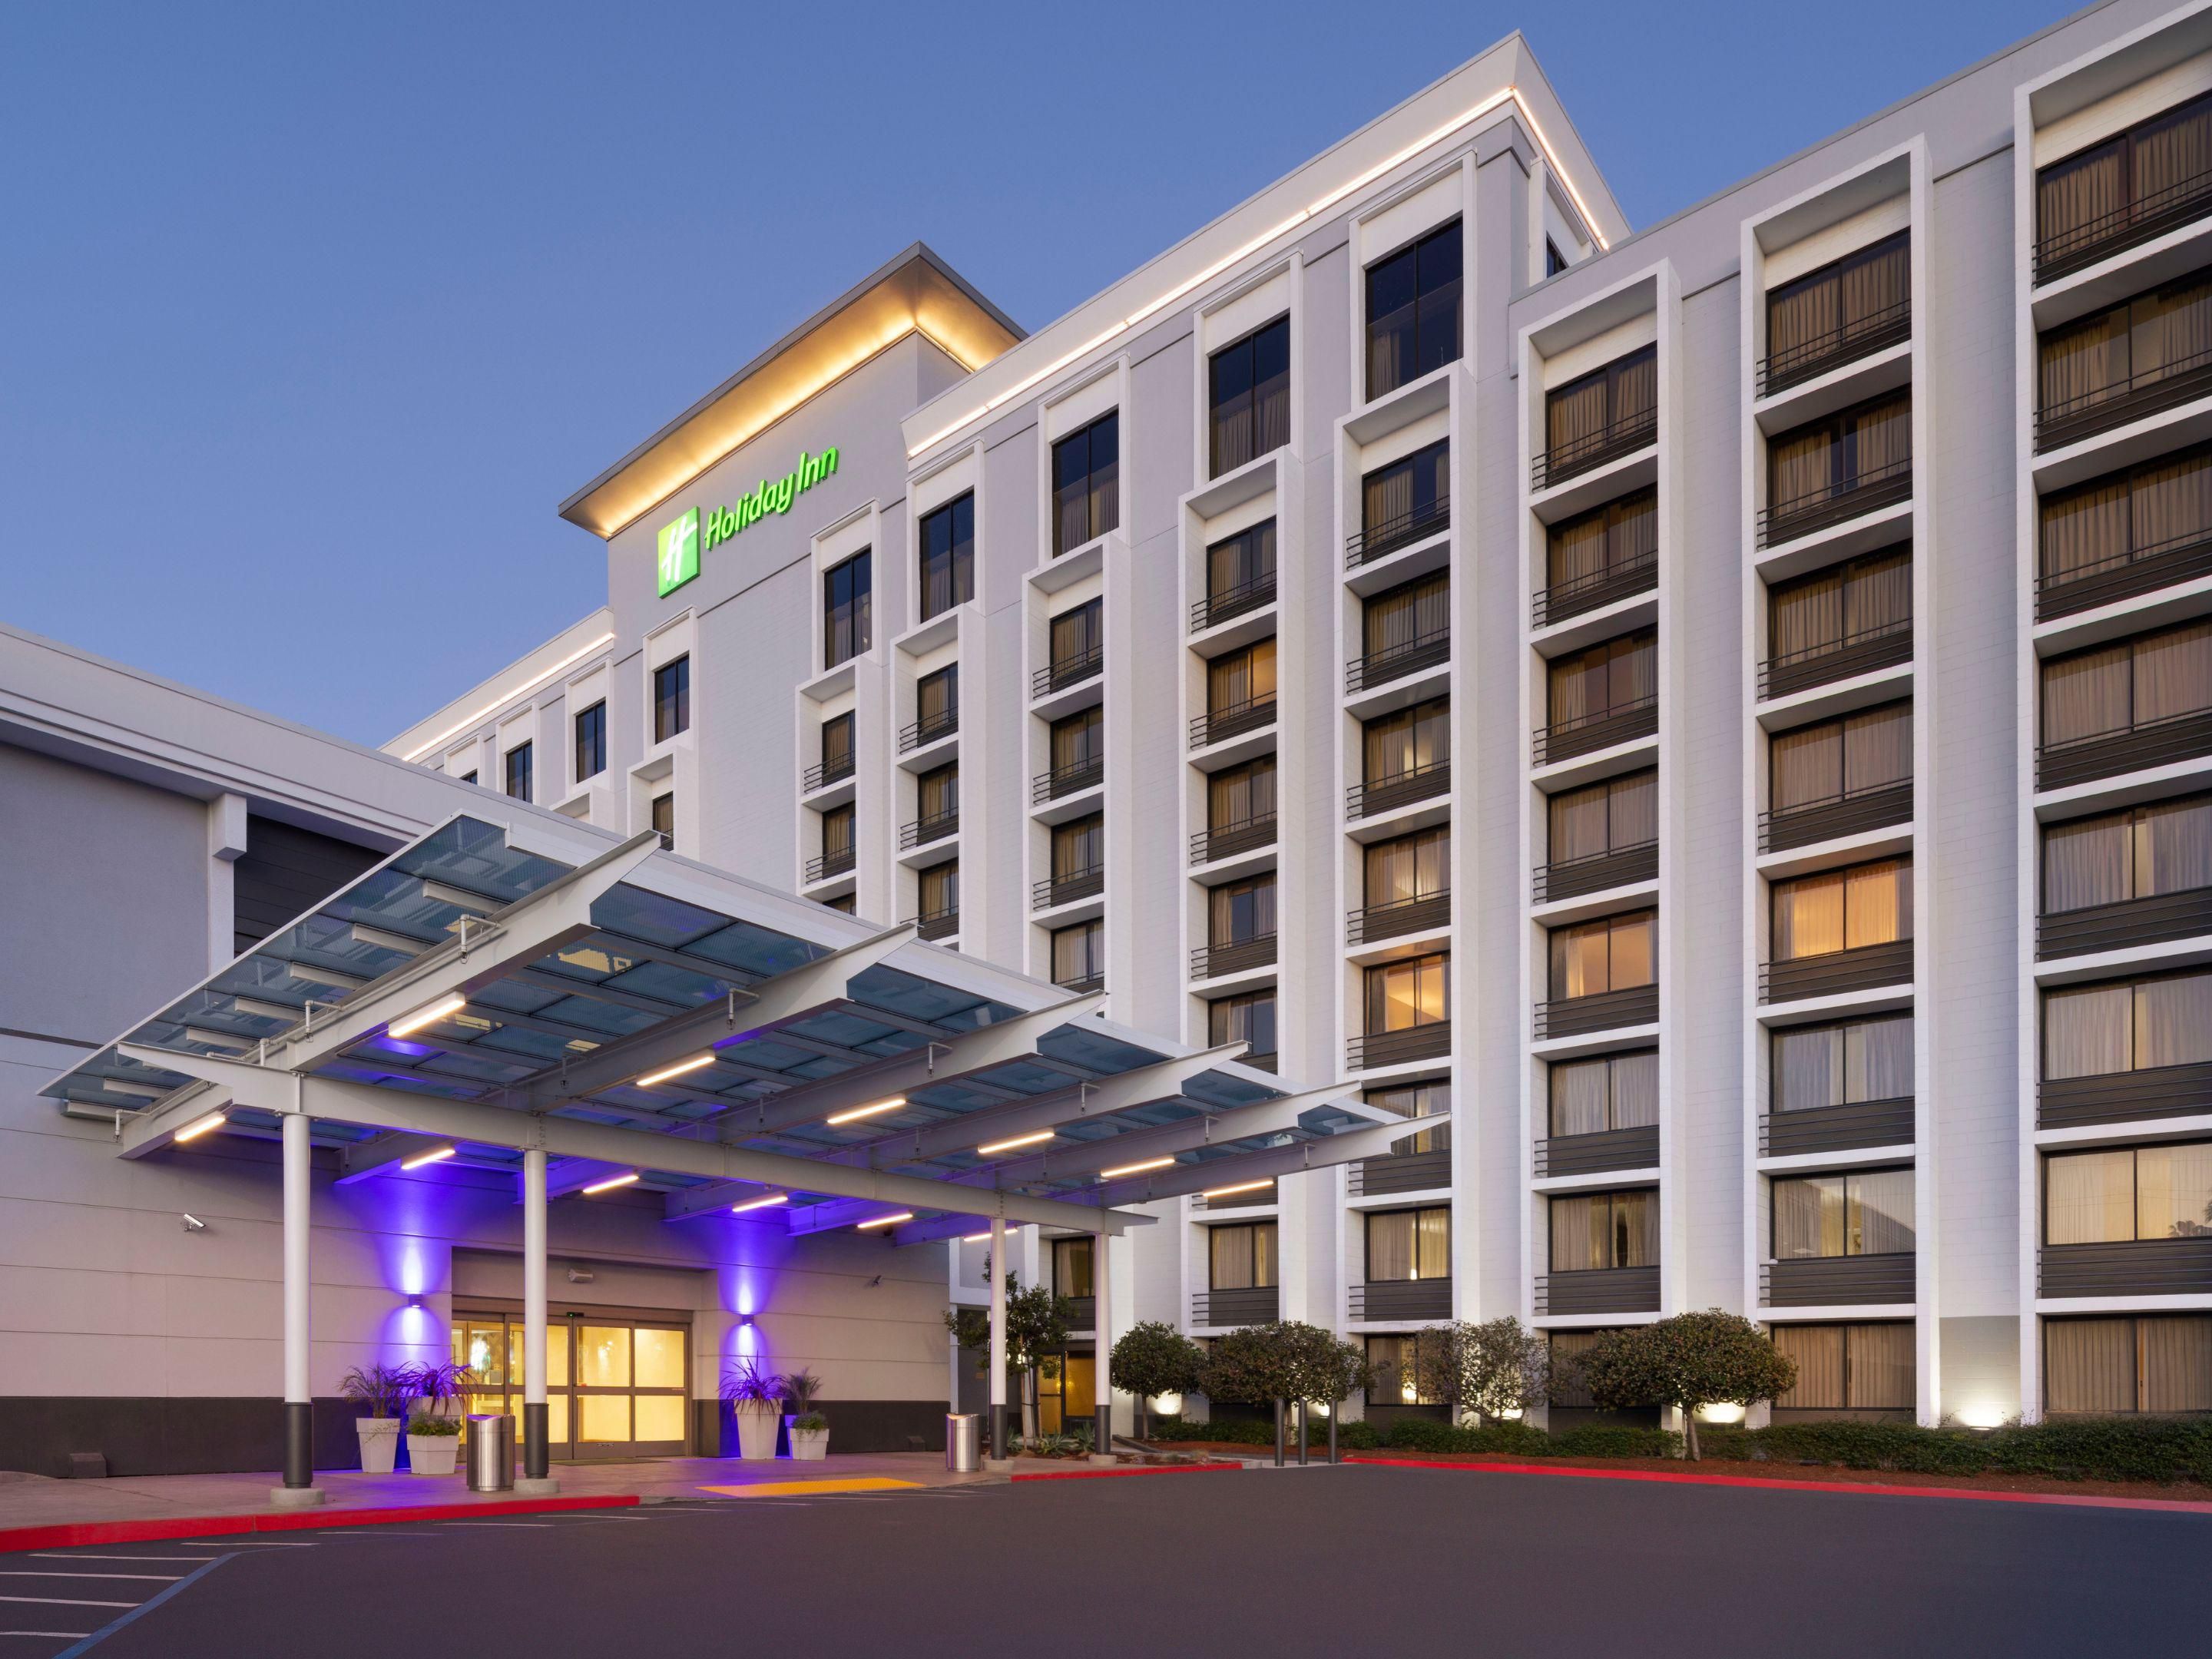 Top Hotels in Santa Cruz, CA